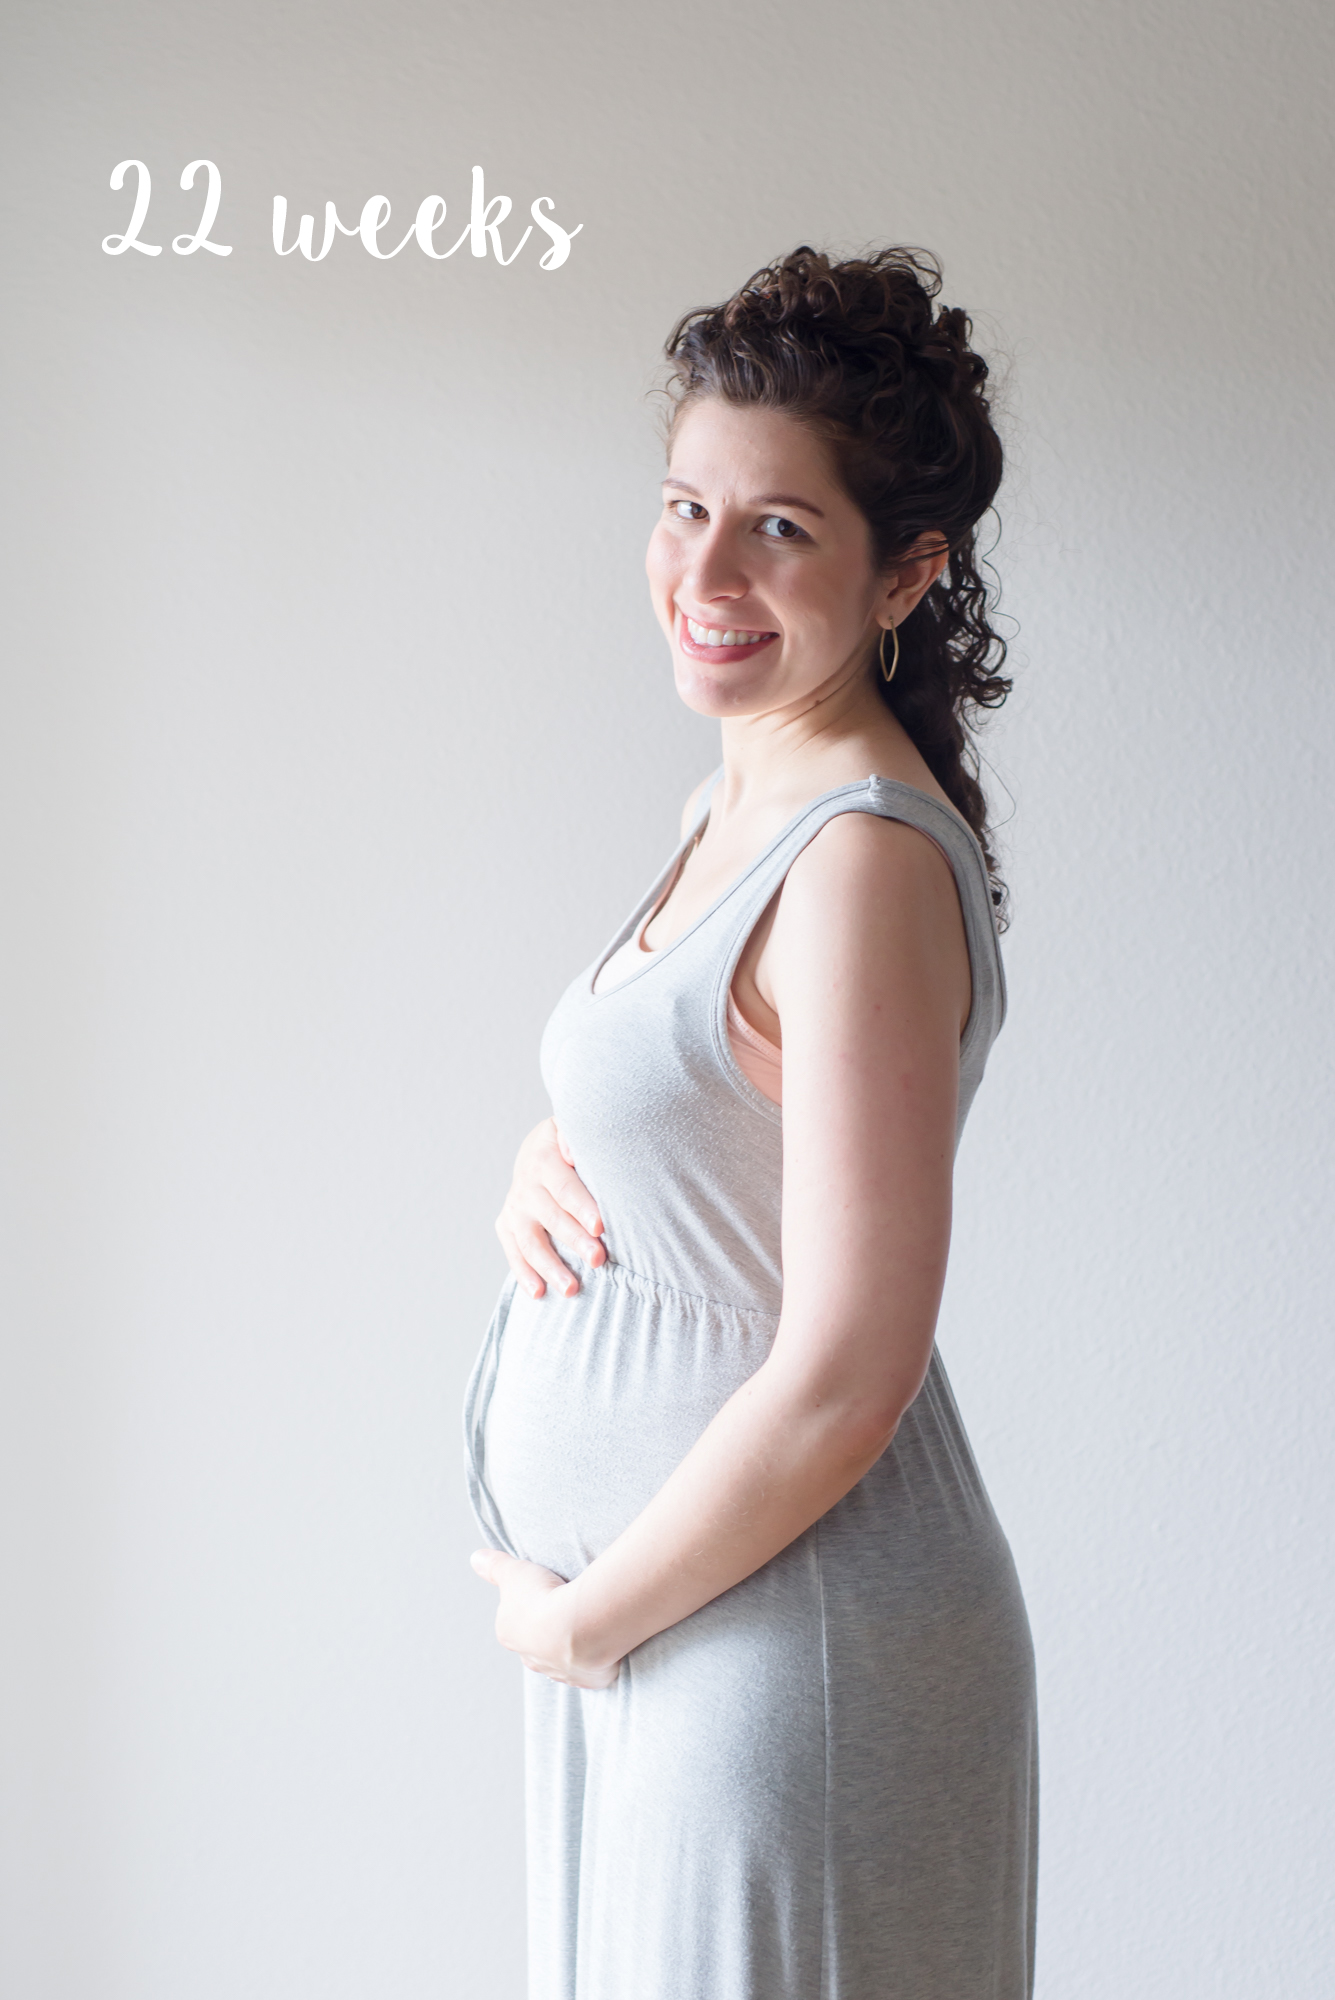 22 Weeks, Pregnancy Update | Jack